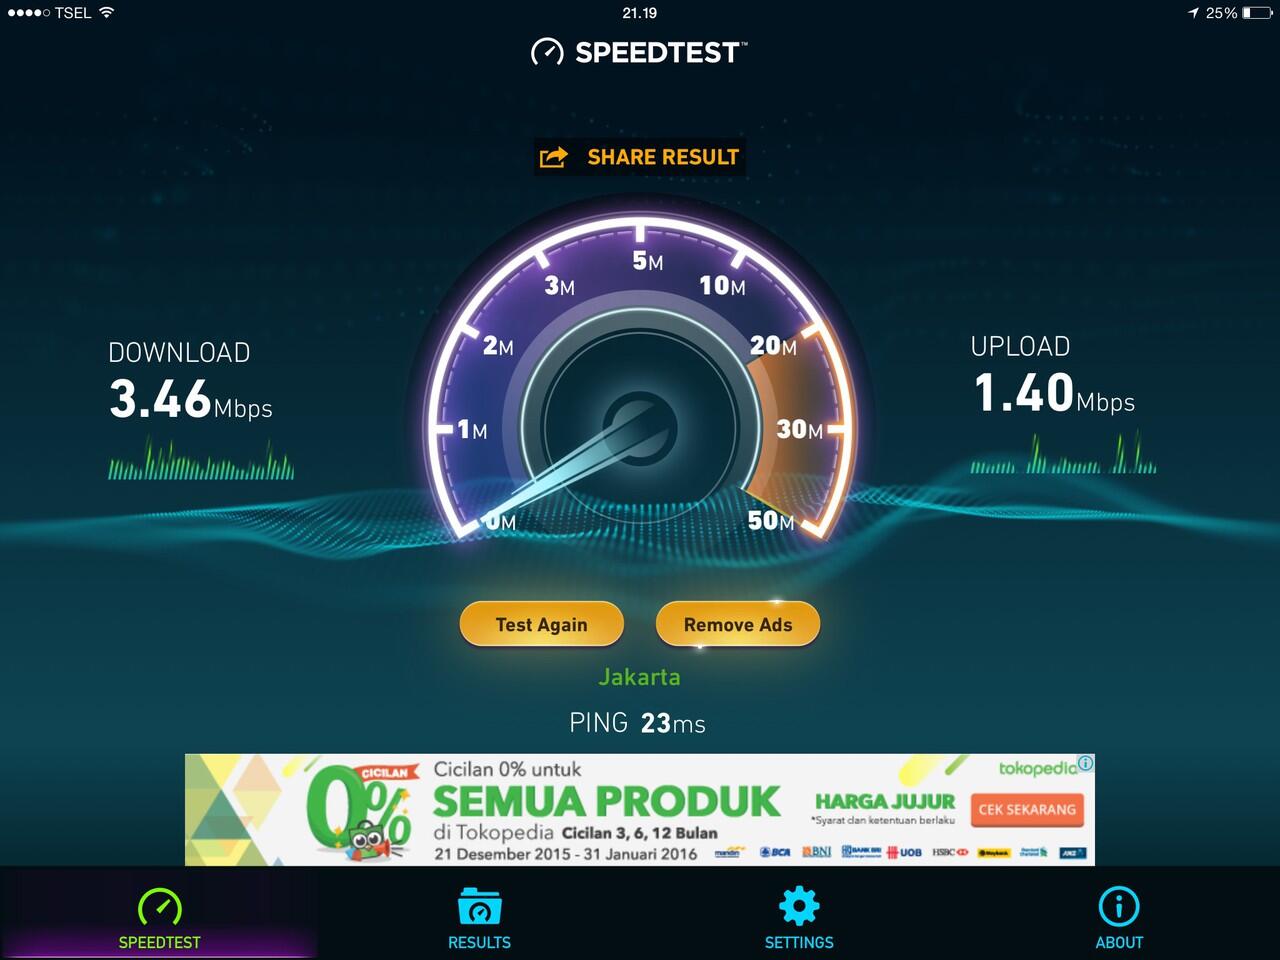 MiFi Andromax M2S 4G LTE, Bye-Bye Internetan Lemot! - Page3 | KASKUS